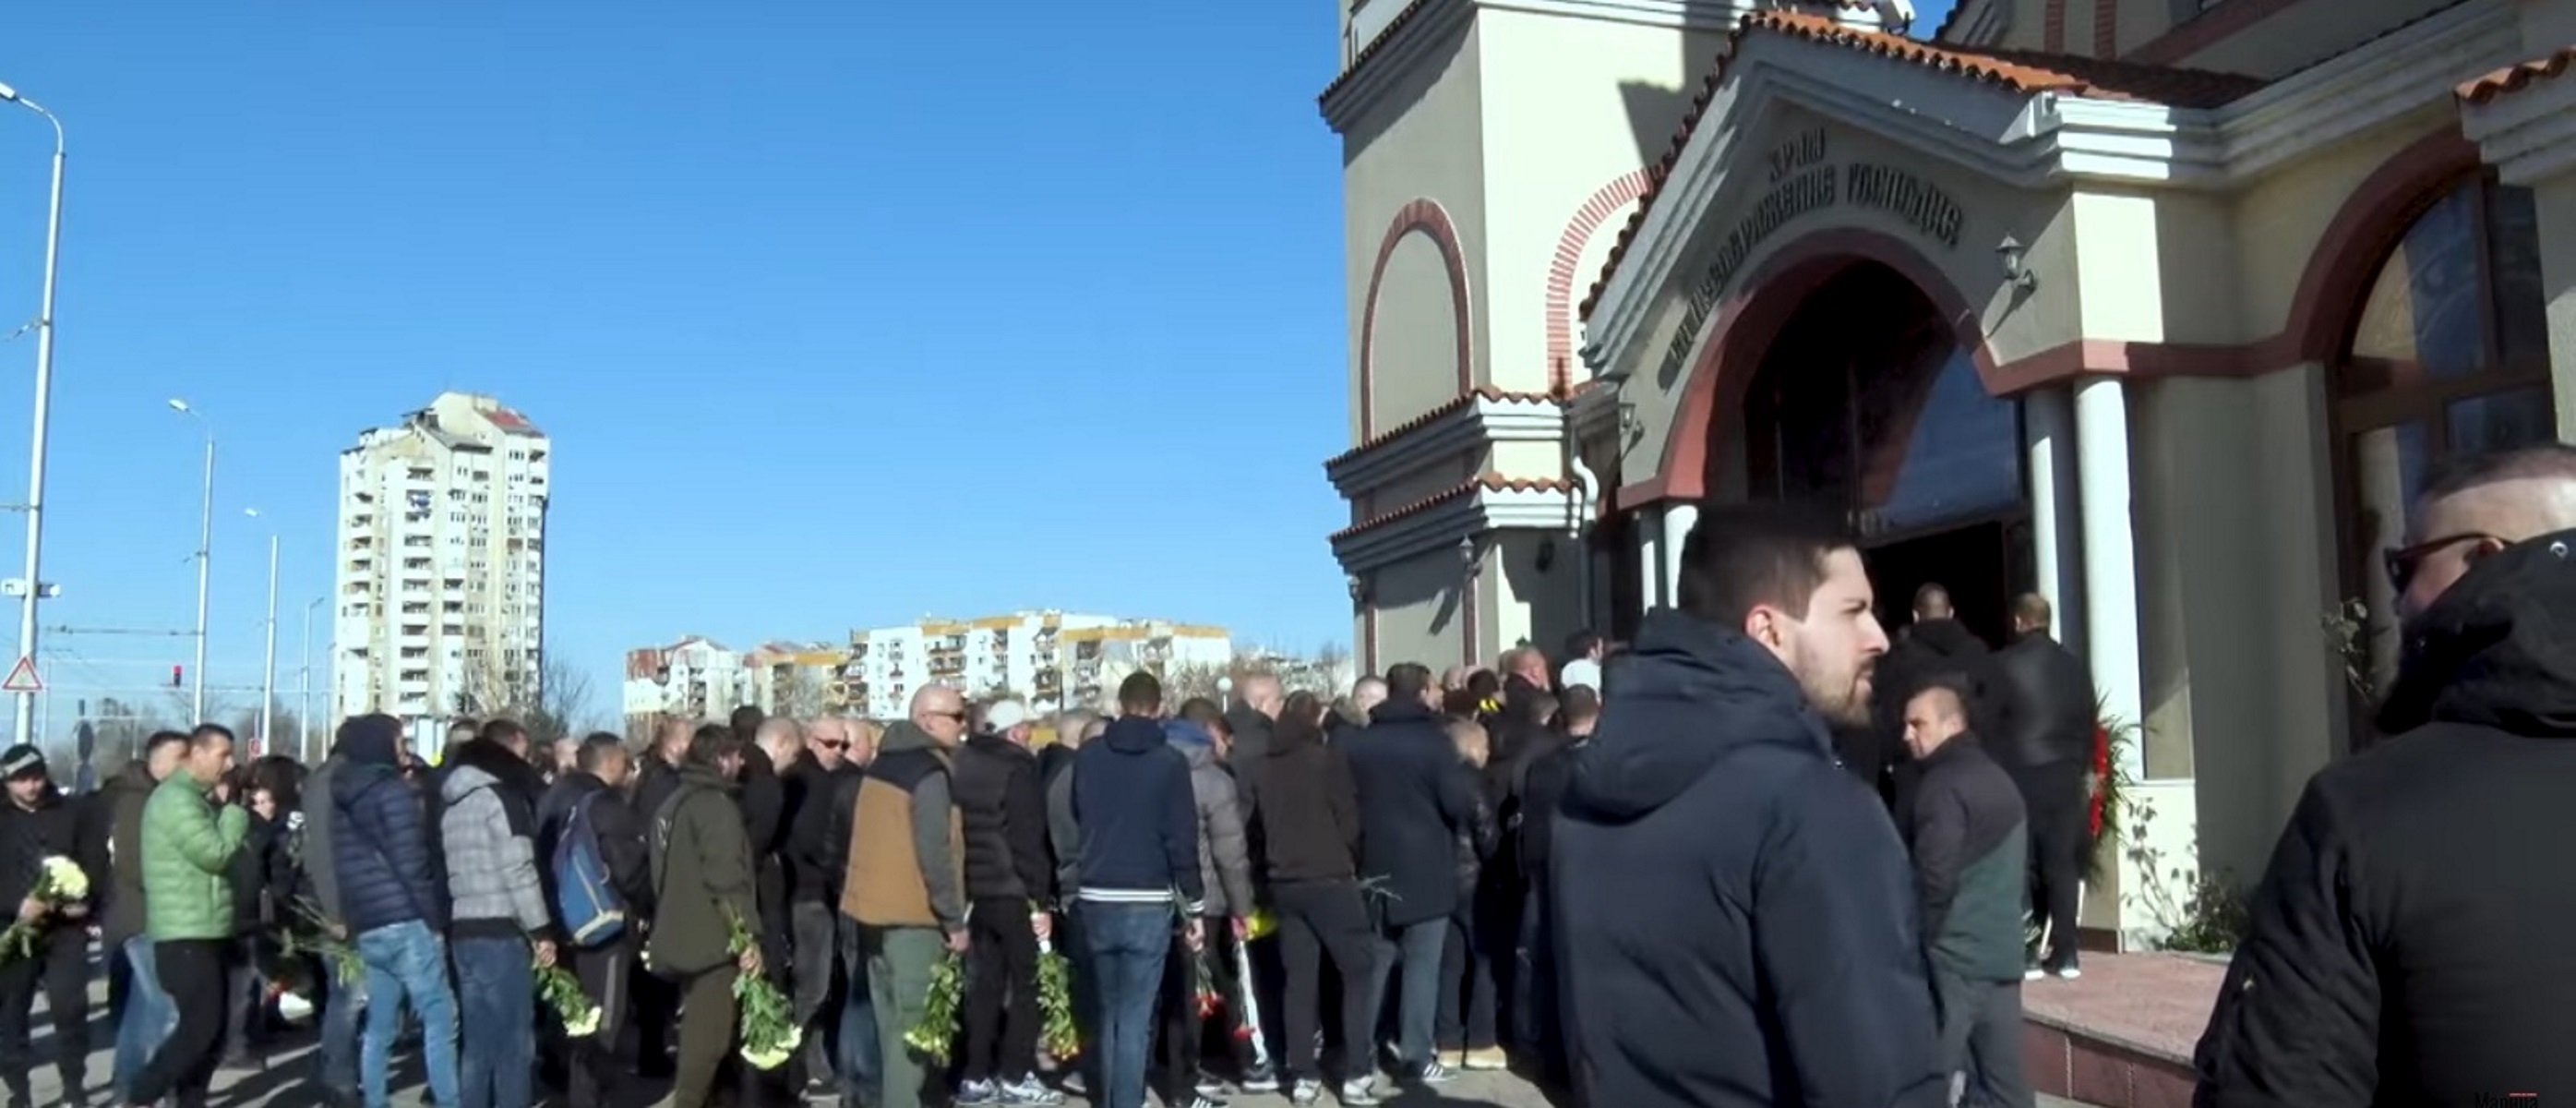 Νεκρός οπαδός: Θρήνος στην κηδεία! Στεφάνια από βουλγαρικές ομάδες και τον Αρη [video]